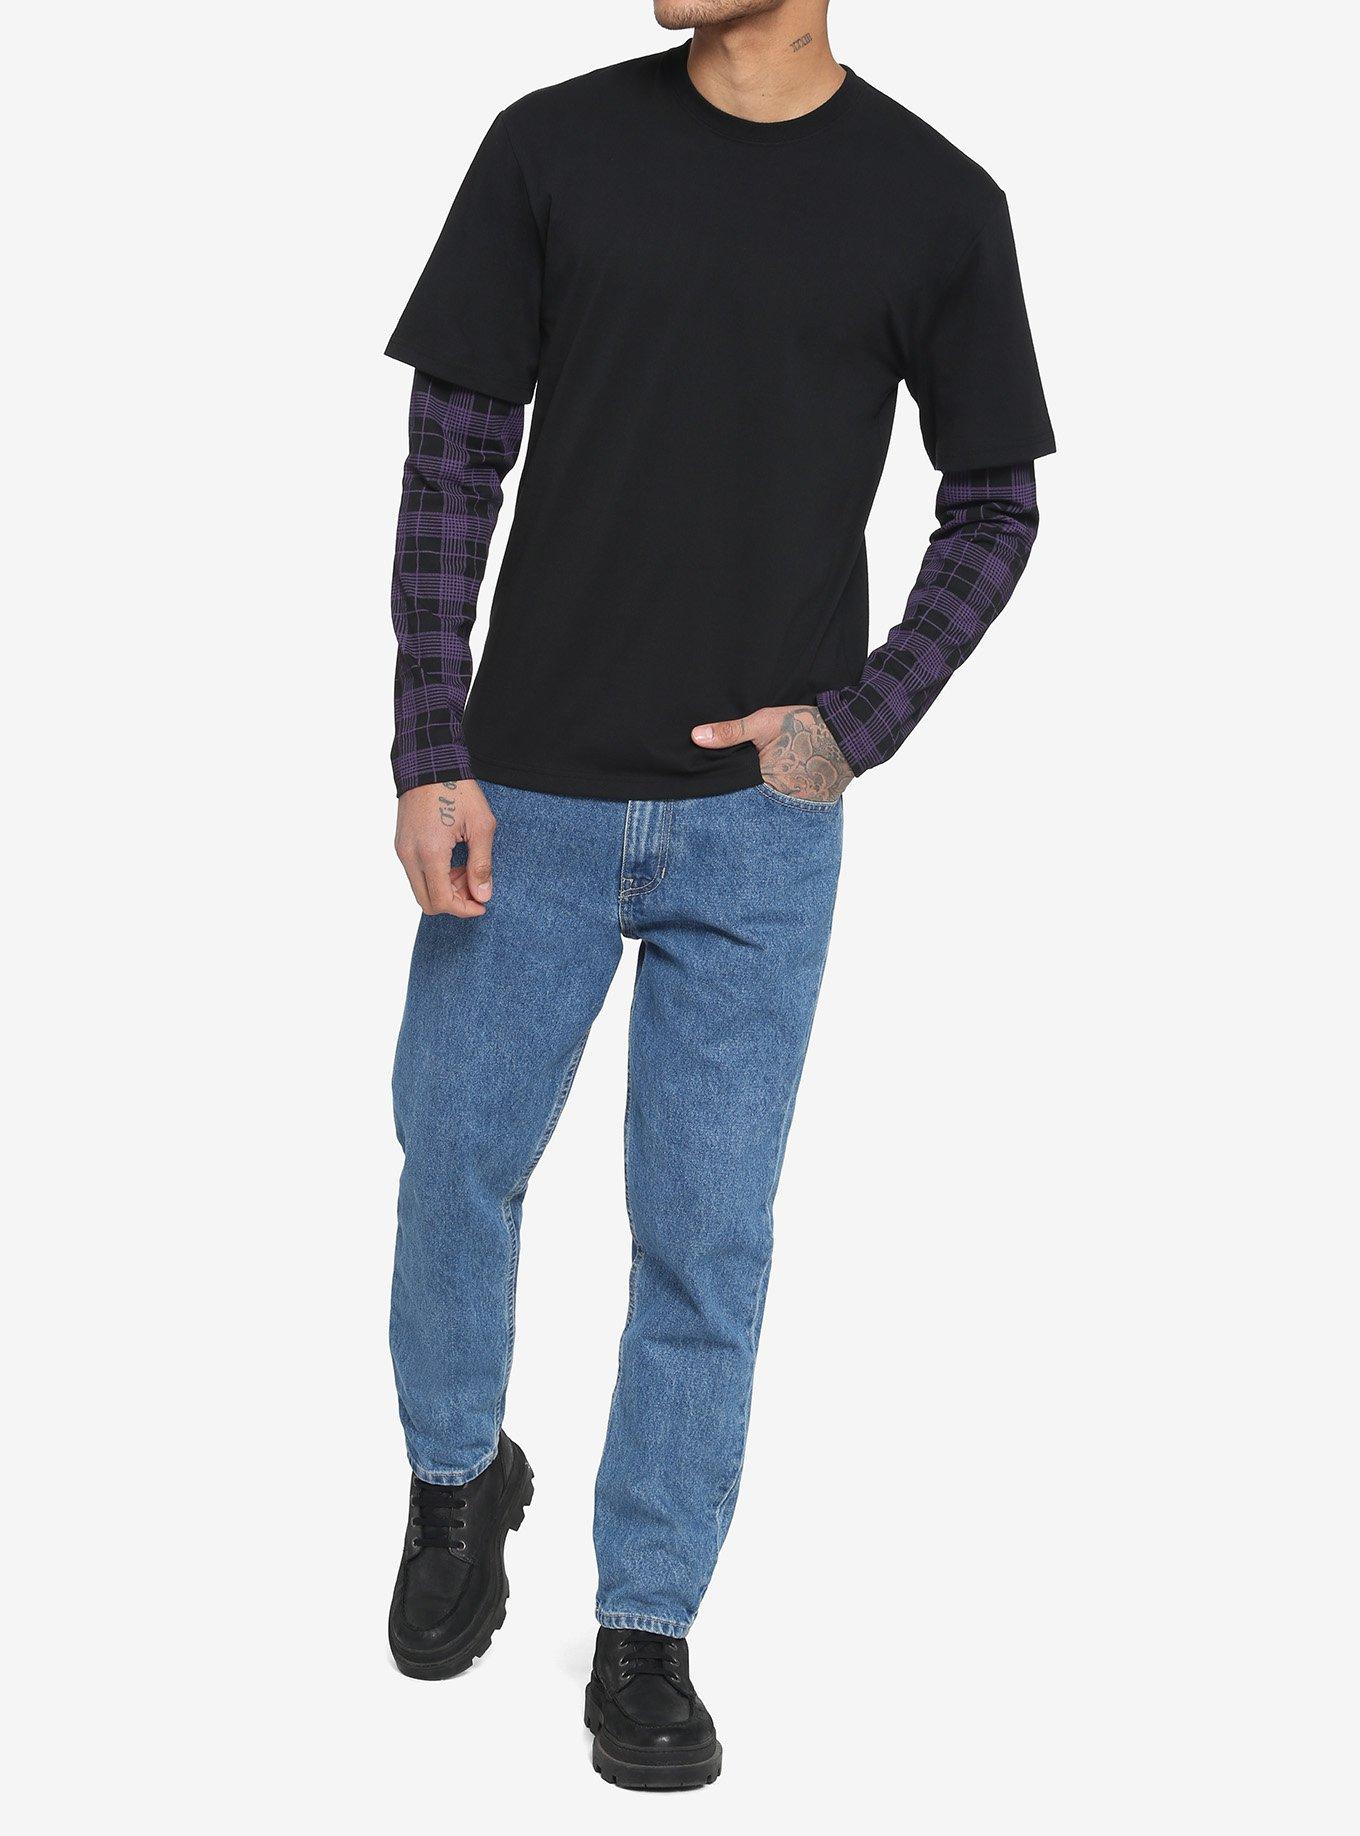 Black & Purple Plaid Sleeve Twofer Long-Sleeve T-Shirt, BLACK  PURPLE, alternate